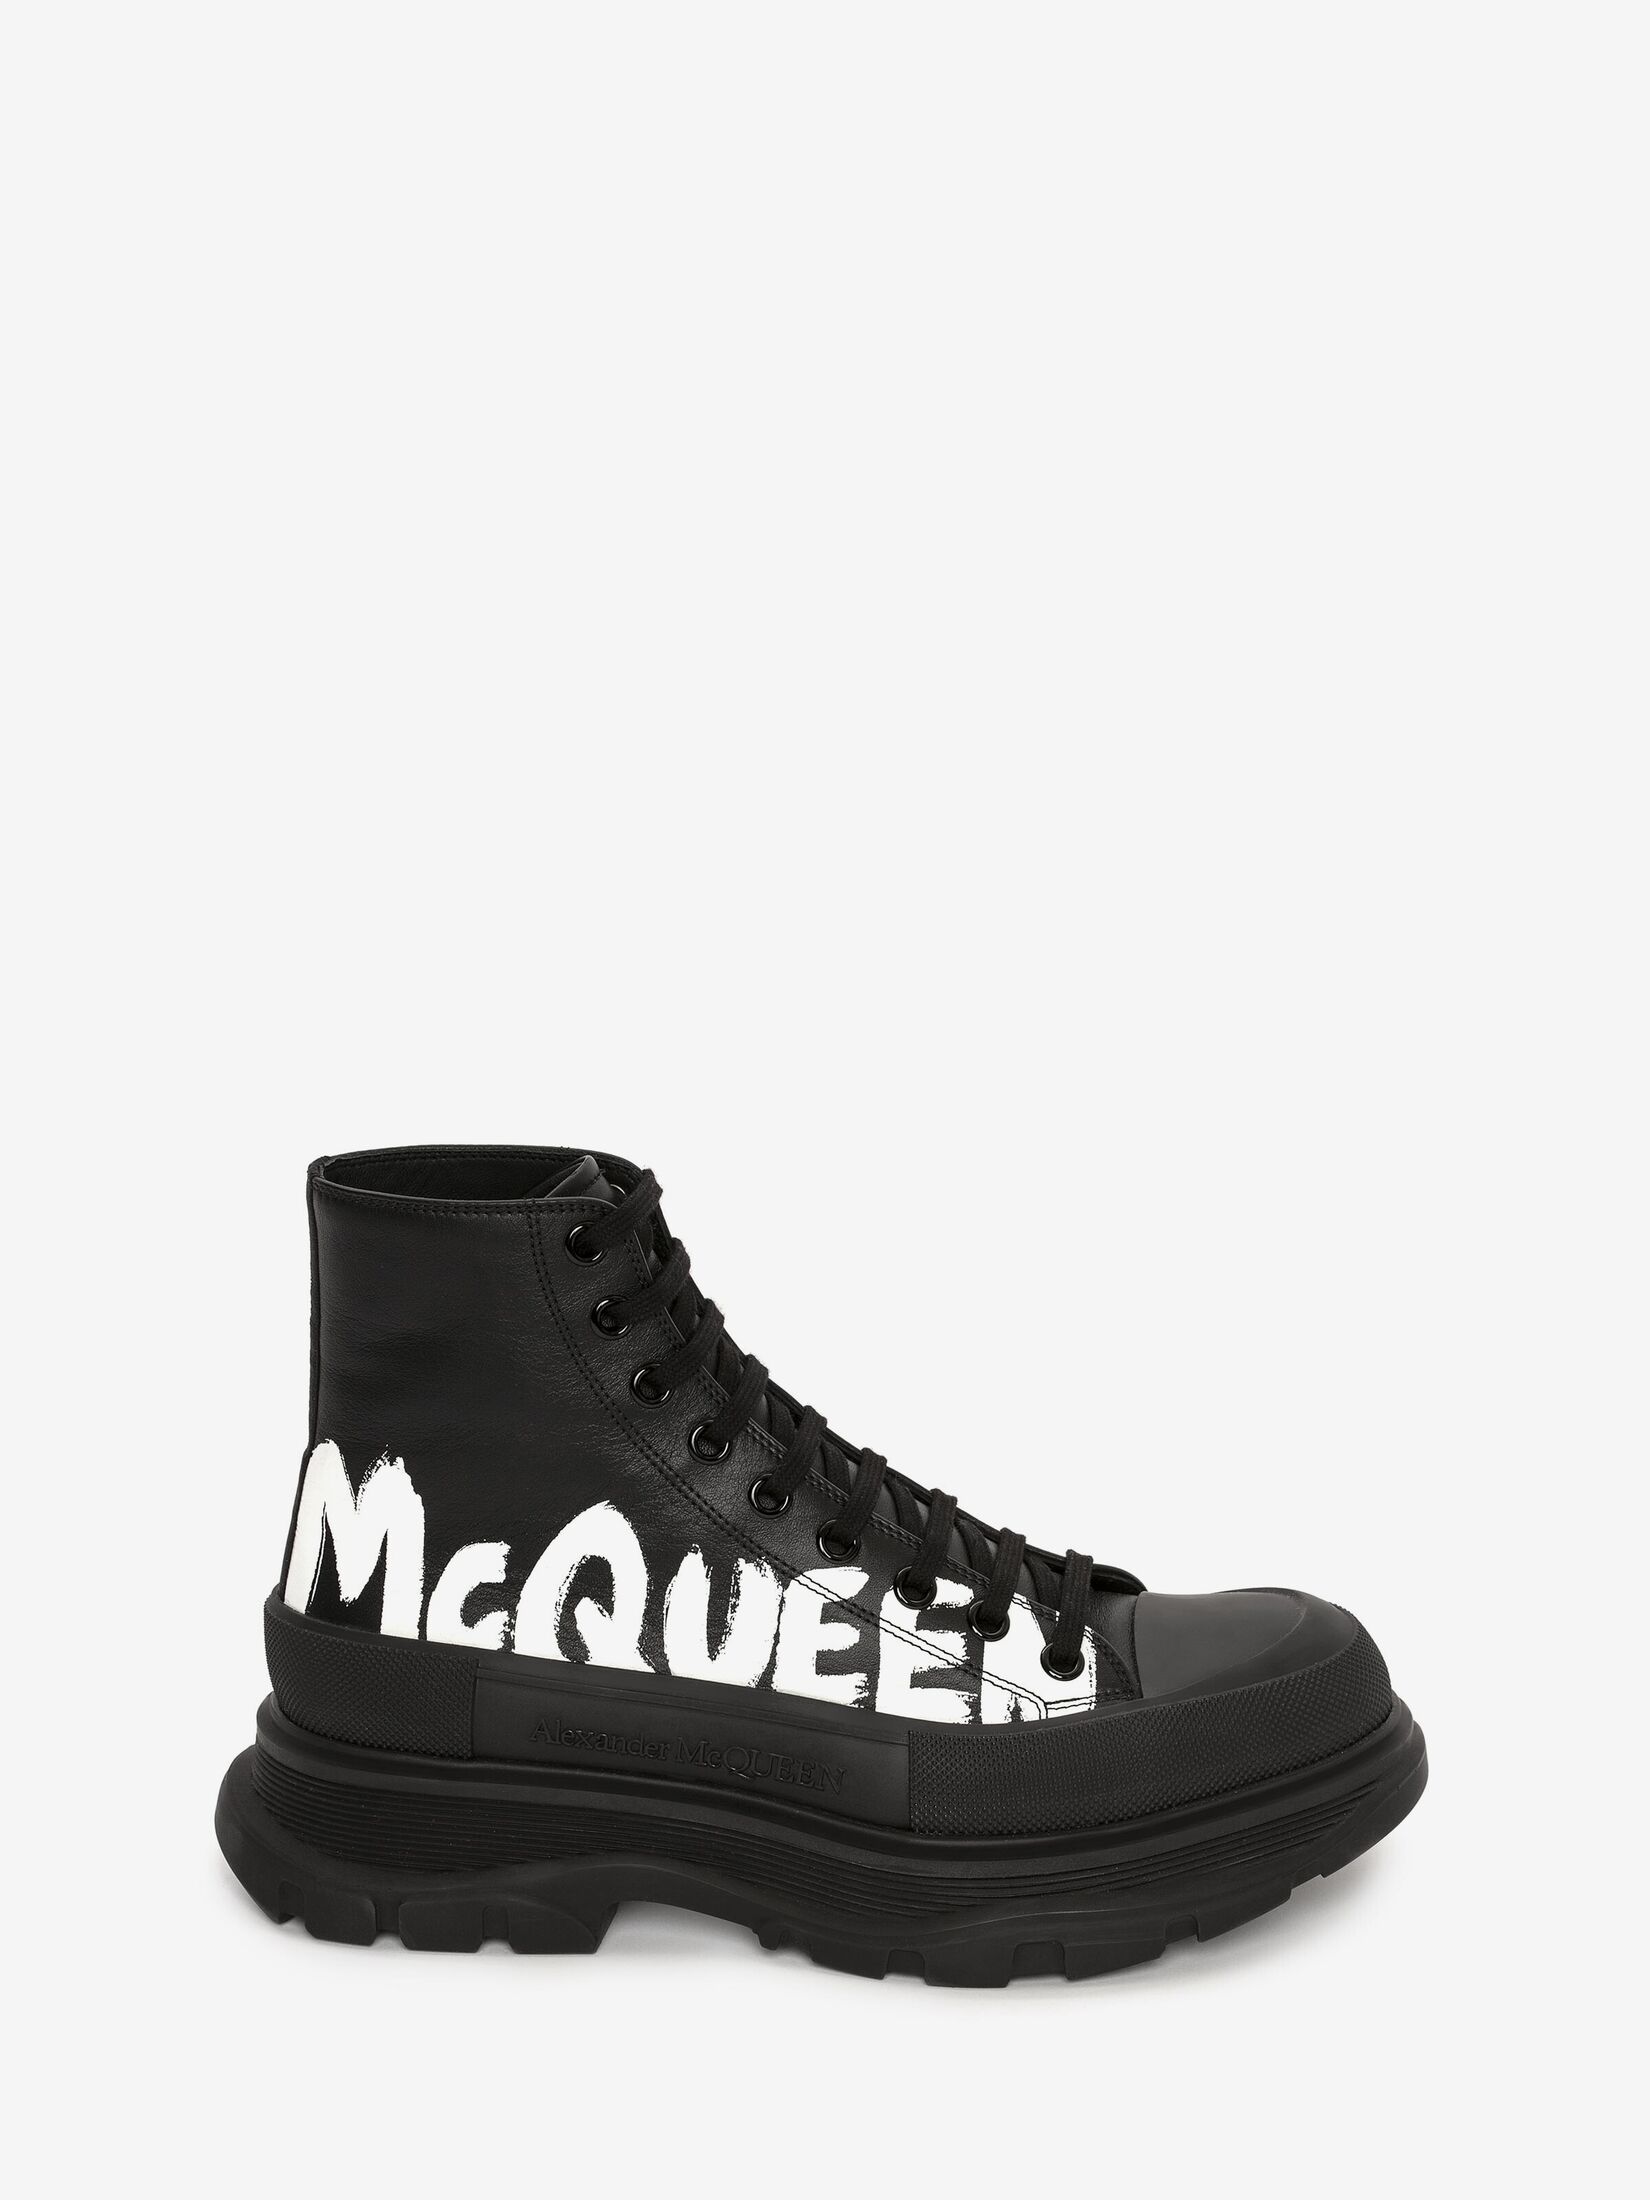 Alexander McQueen ALEXANDER MCQUEEN FORMAL BLK BOOT - Black